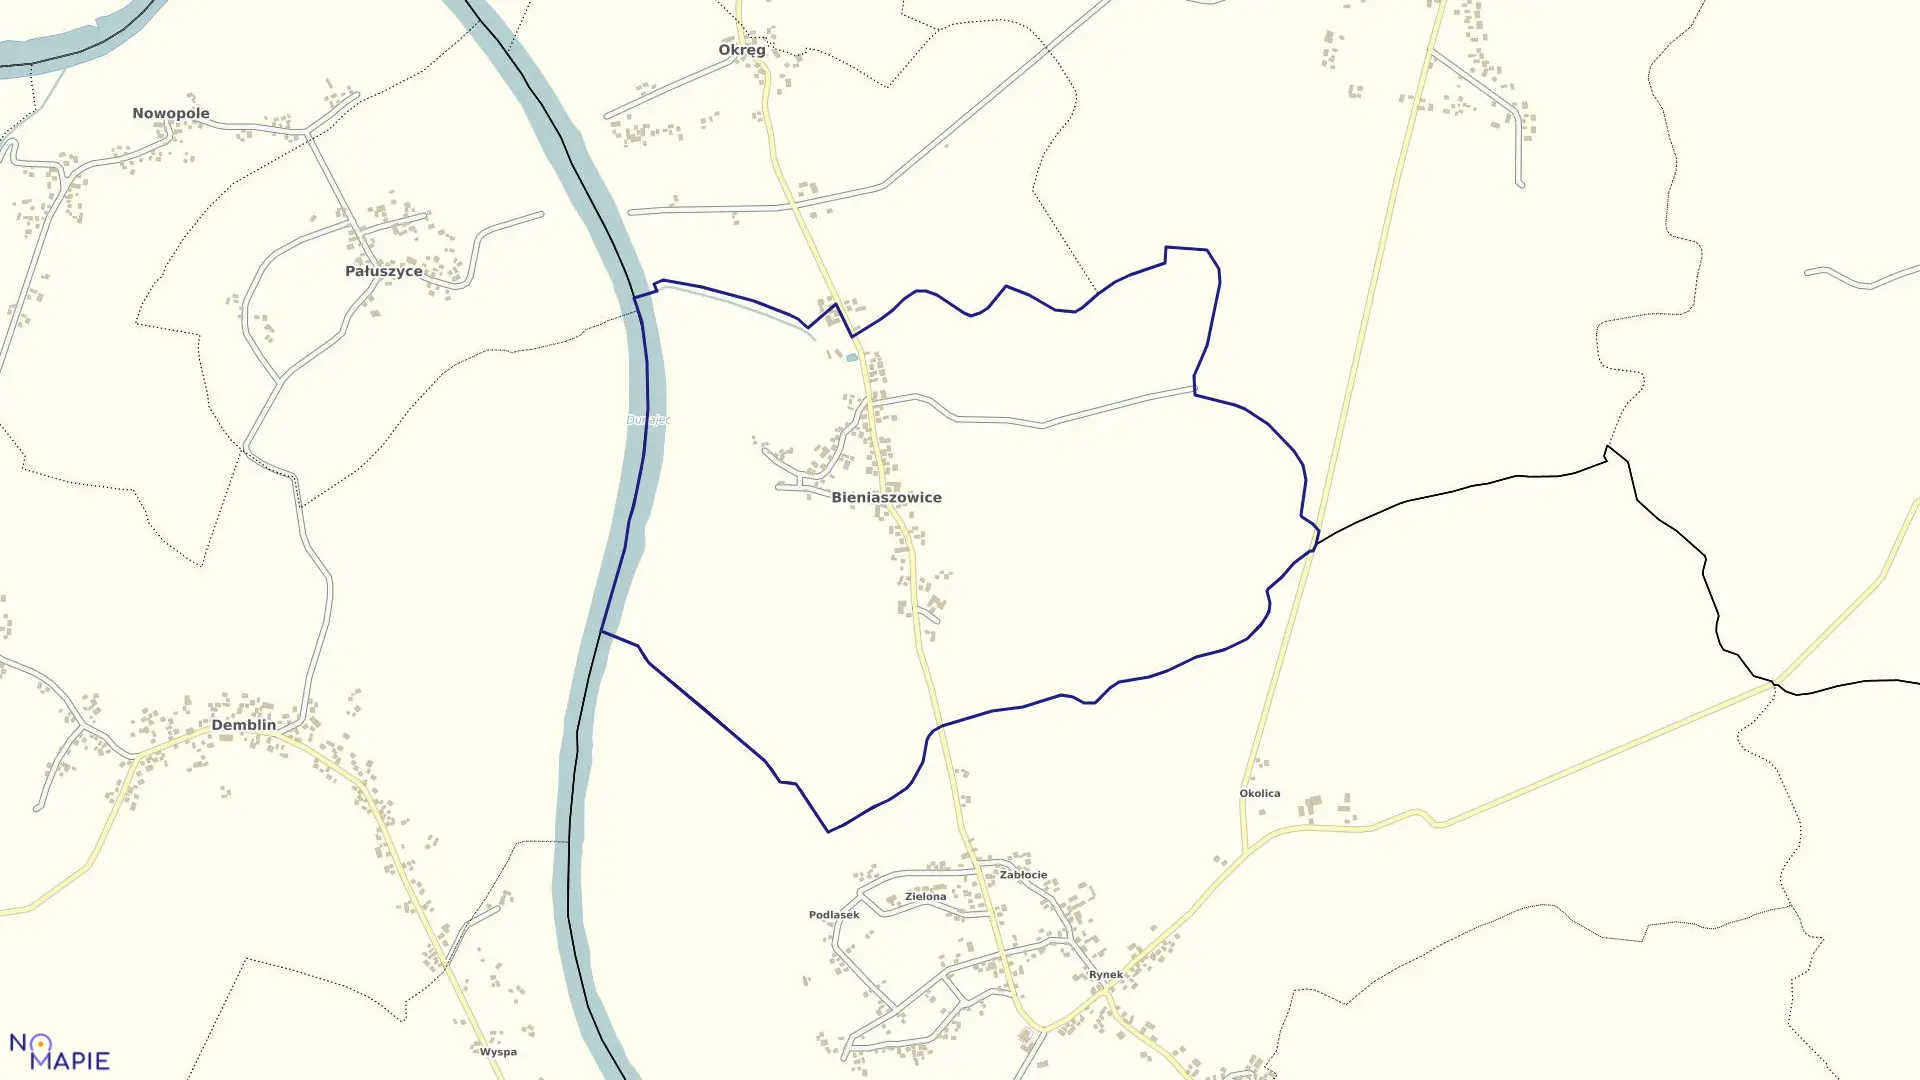 Mapa obrębu Bieniaszowice w gminie Gręboszów